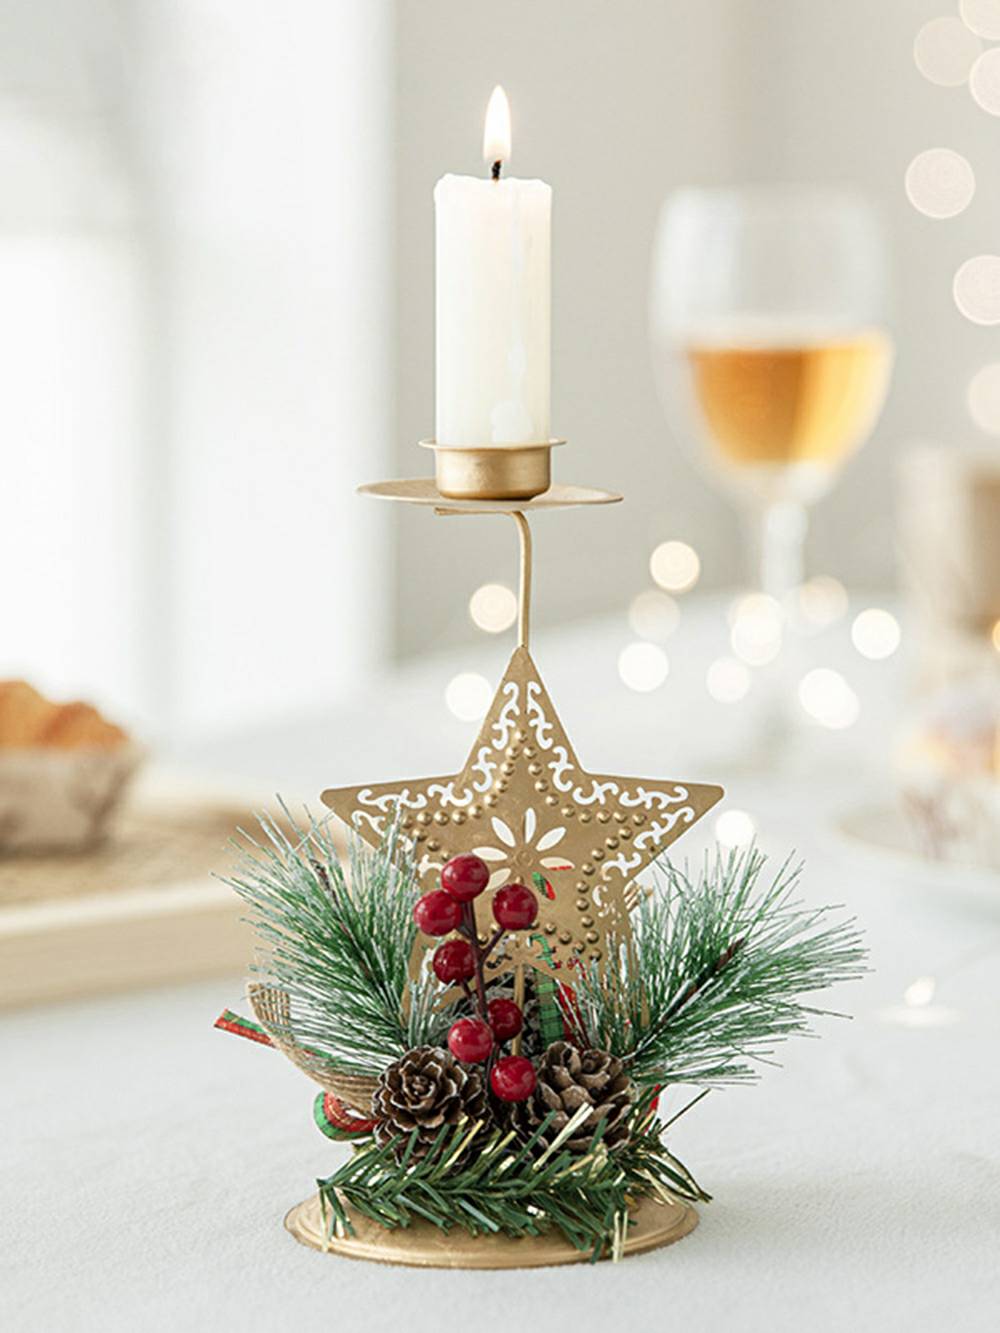 Kerst gouden ijzeren kaarshouder - feestelijk decoraccent